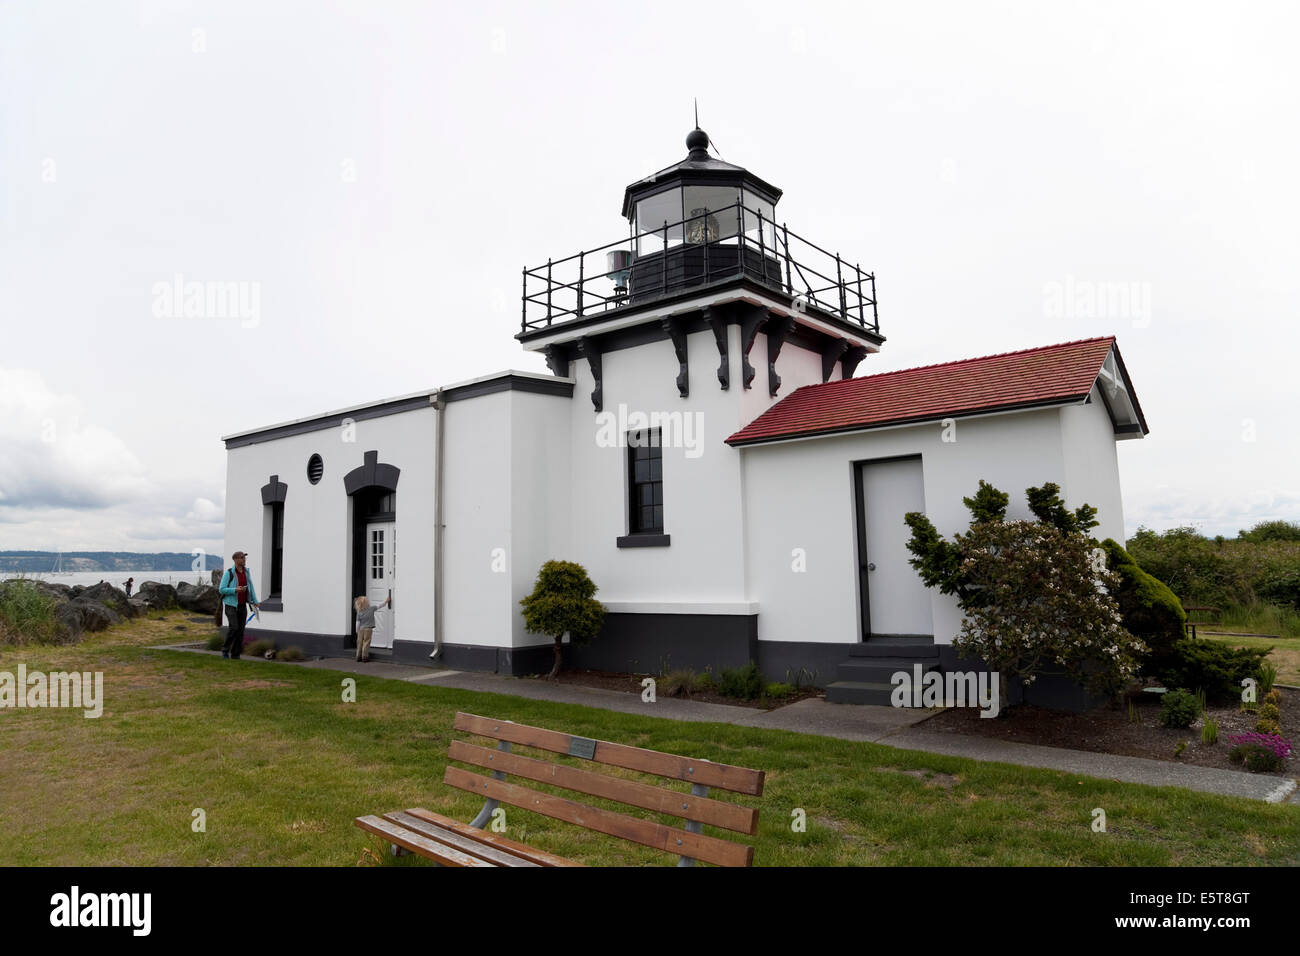 Point No Point Lighthouse, Hansville, Washington, USA Stock Photo